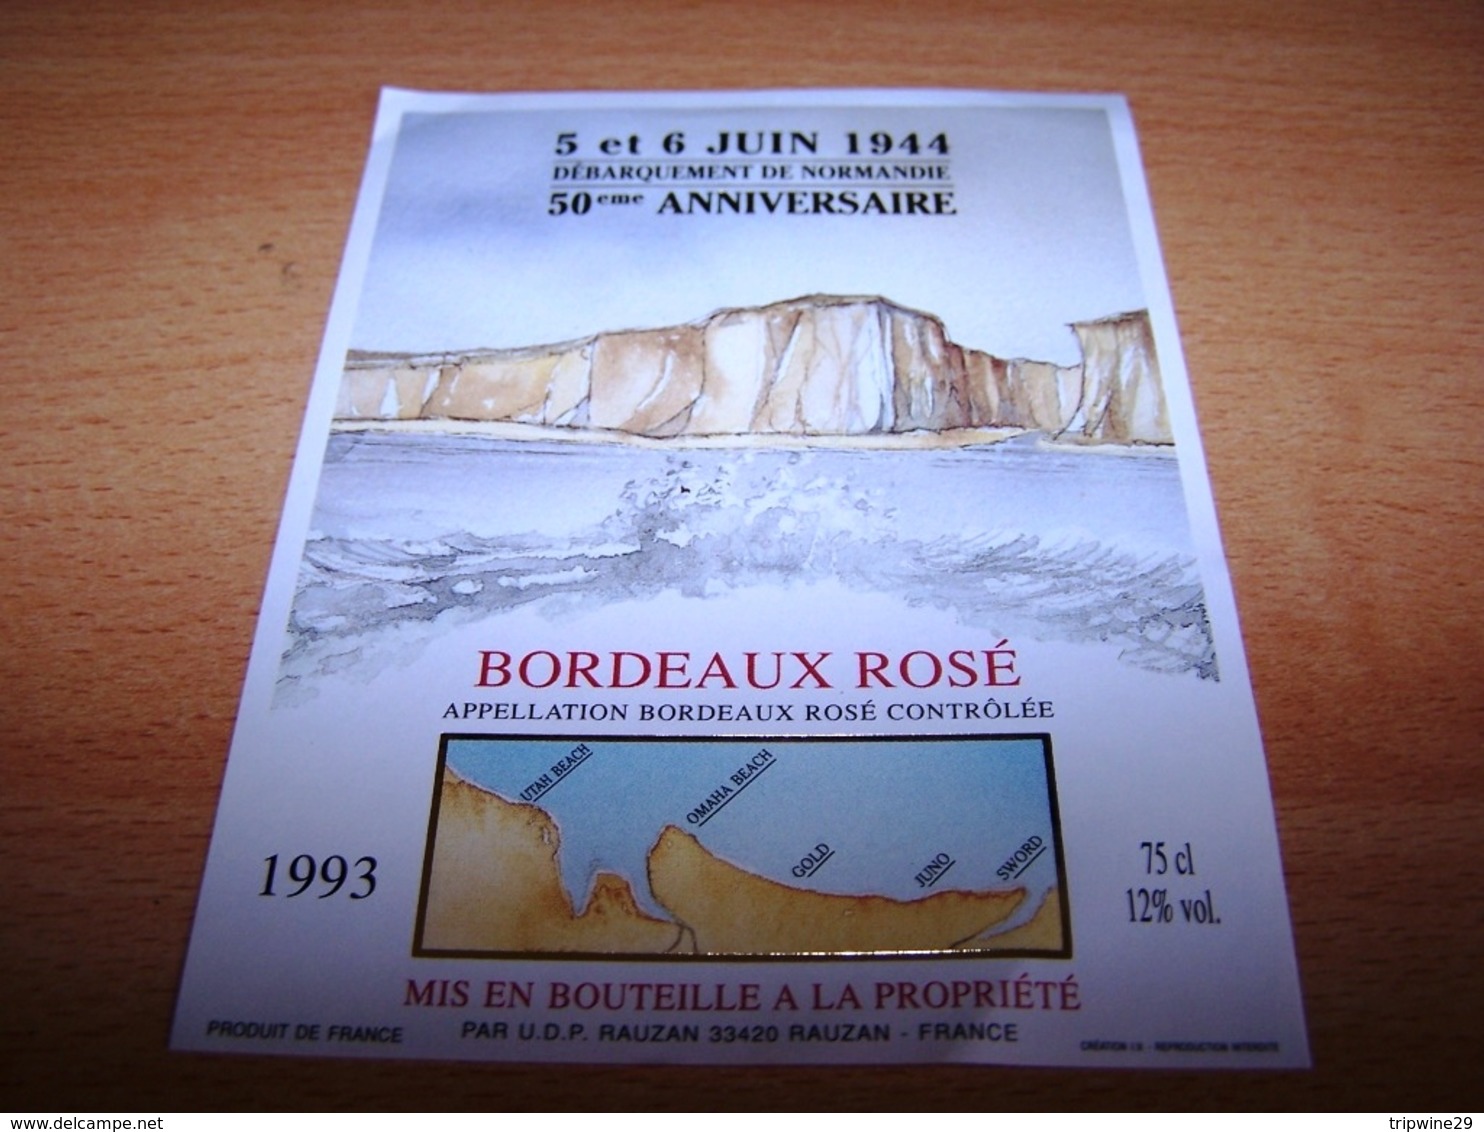 Etiquette Vin Wine Label Militaire Debarquement Normandie Anniversaire Dday Liberation 6 Juin 1944 50eme Rosé - Cinquantenaire De La Libération